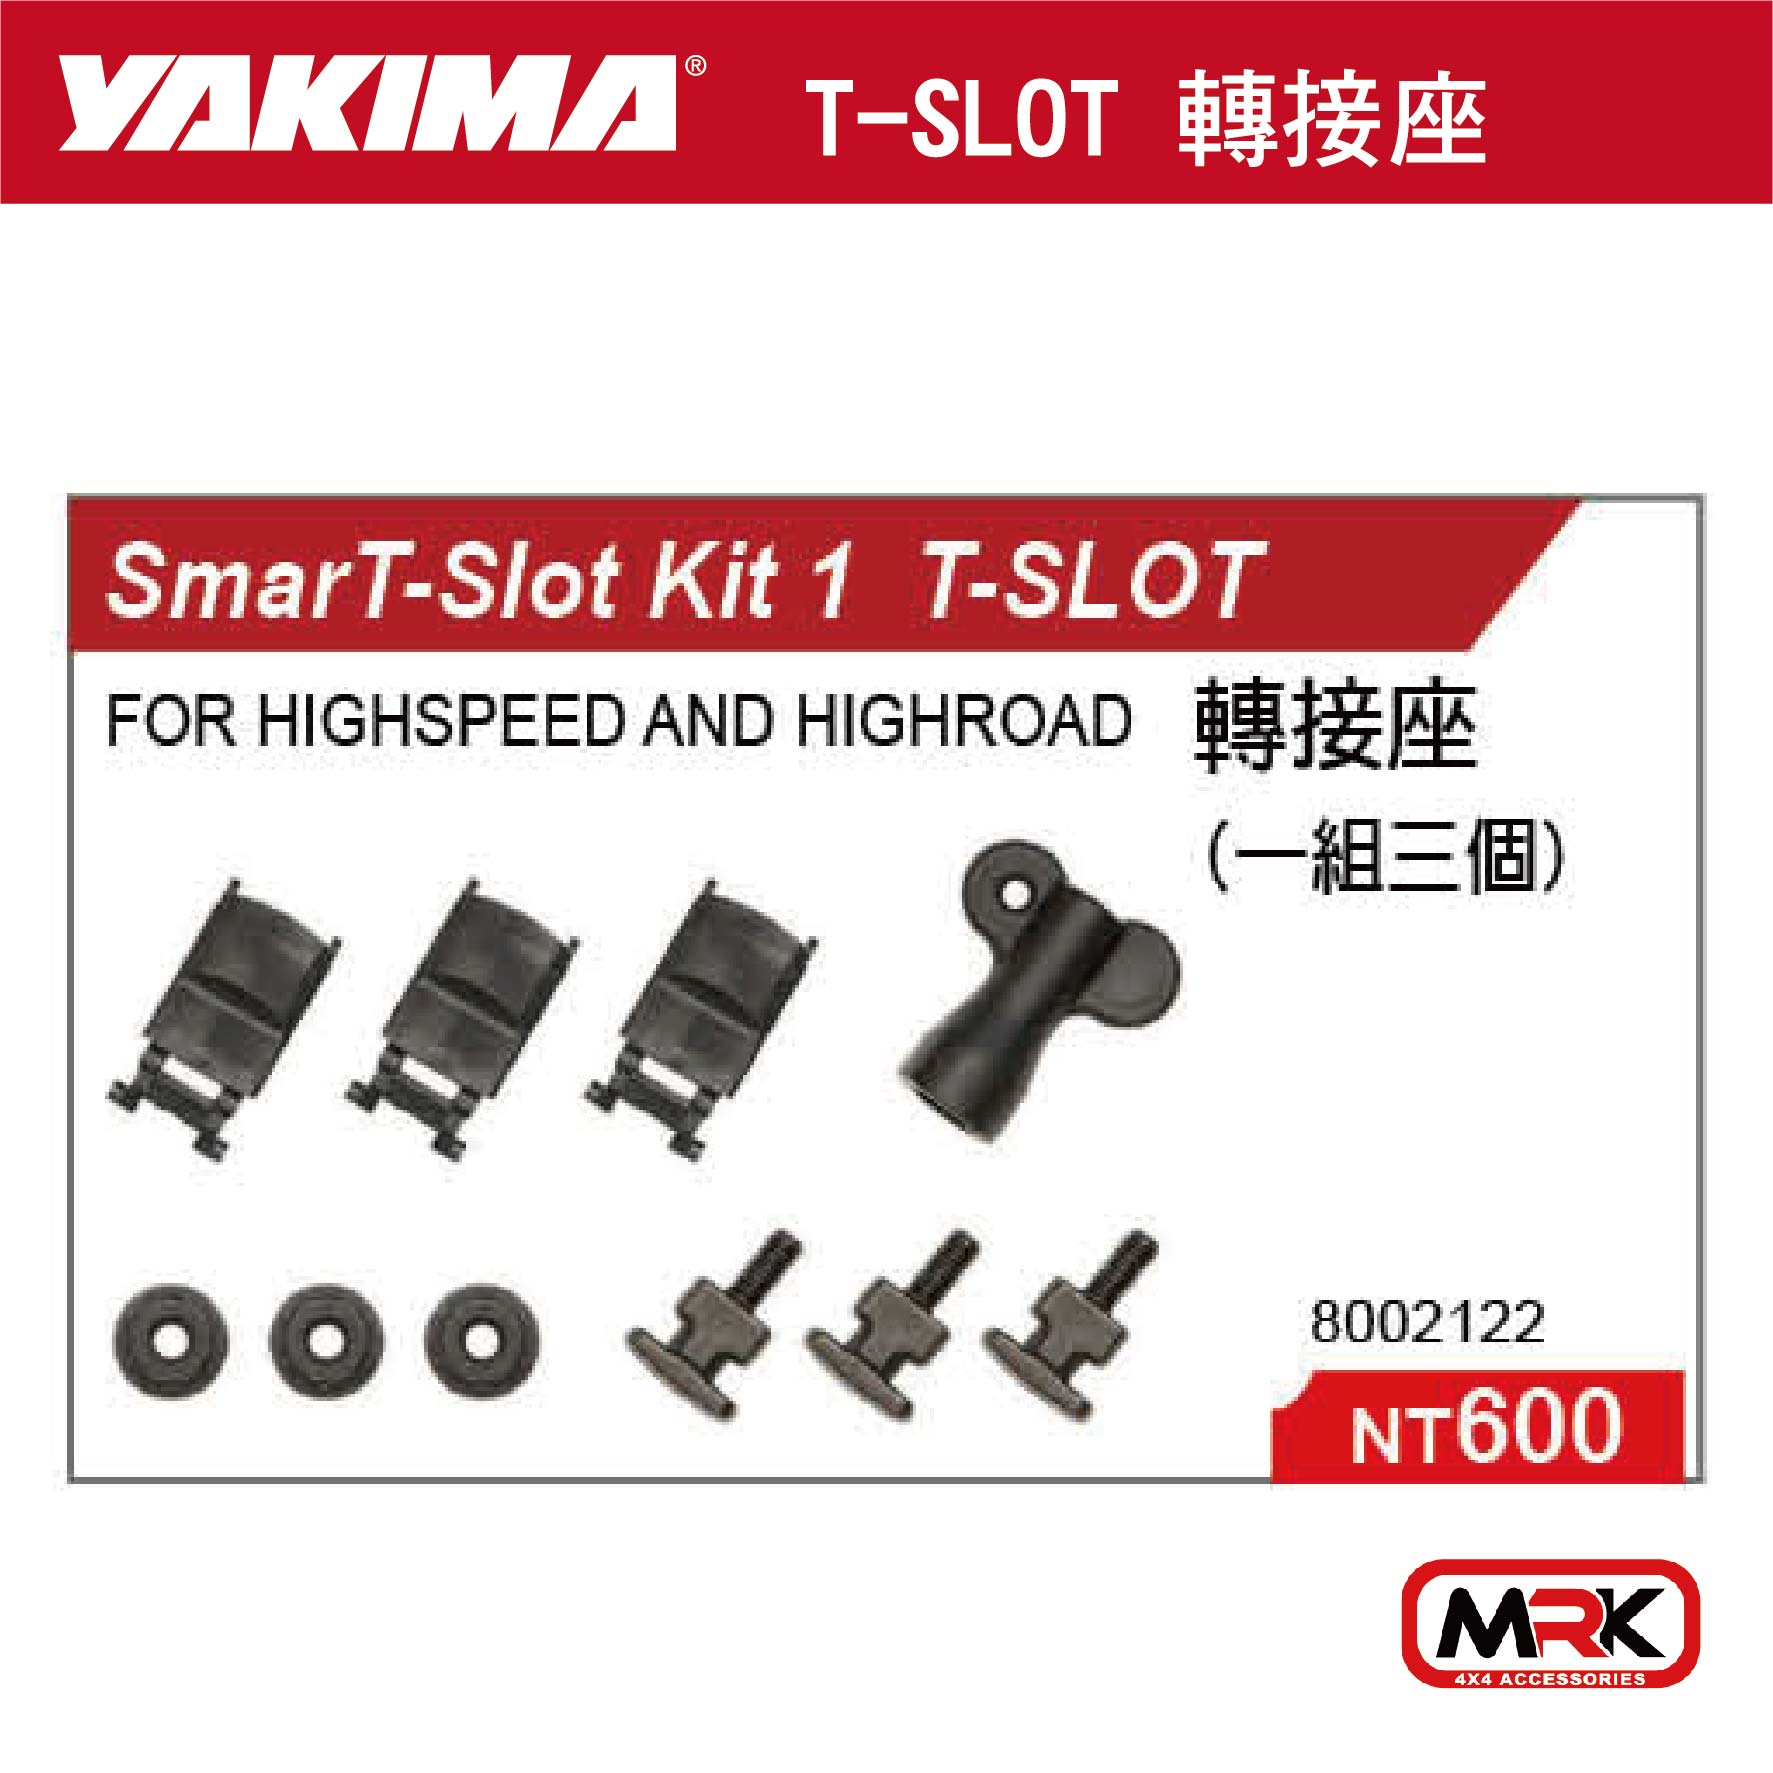 【MRK】YAKIMA SMART-SLOT KIT 1 T-SLOT 轉接座 一組三個 2122